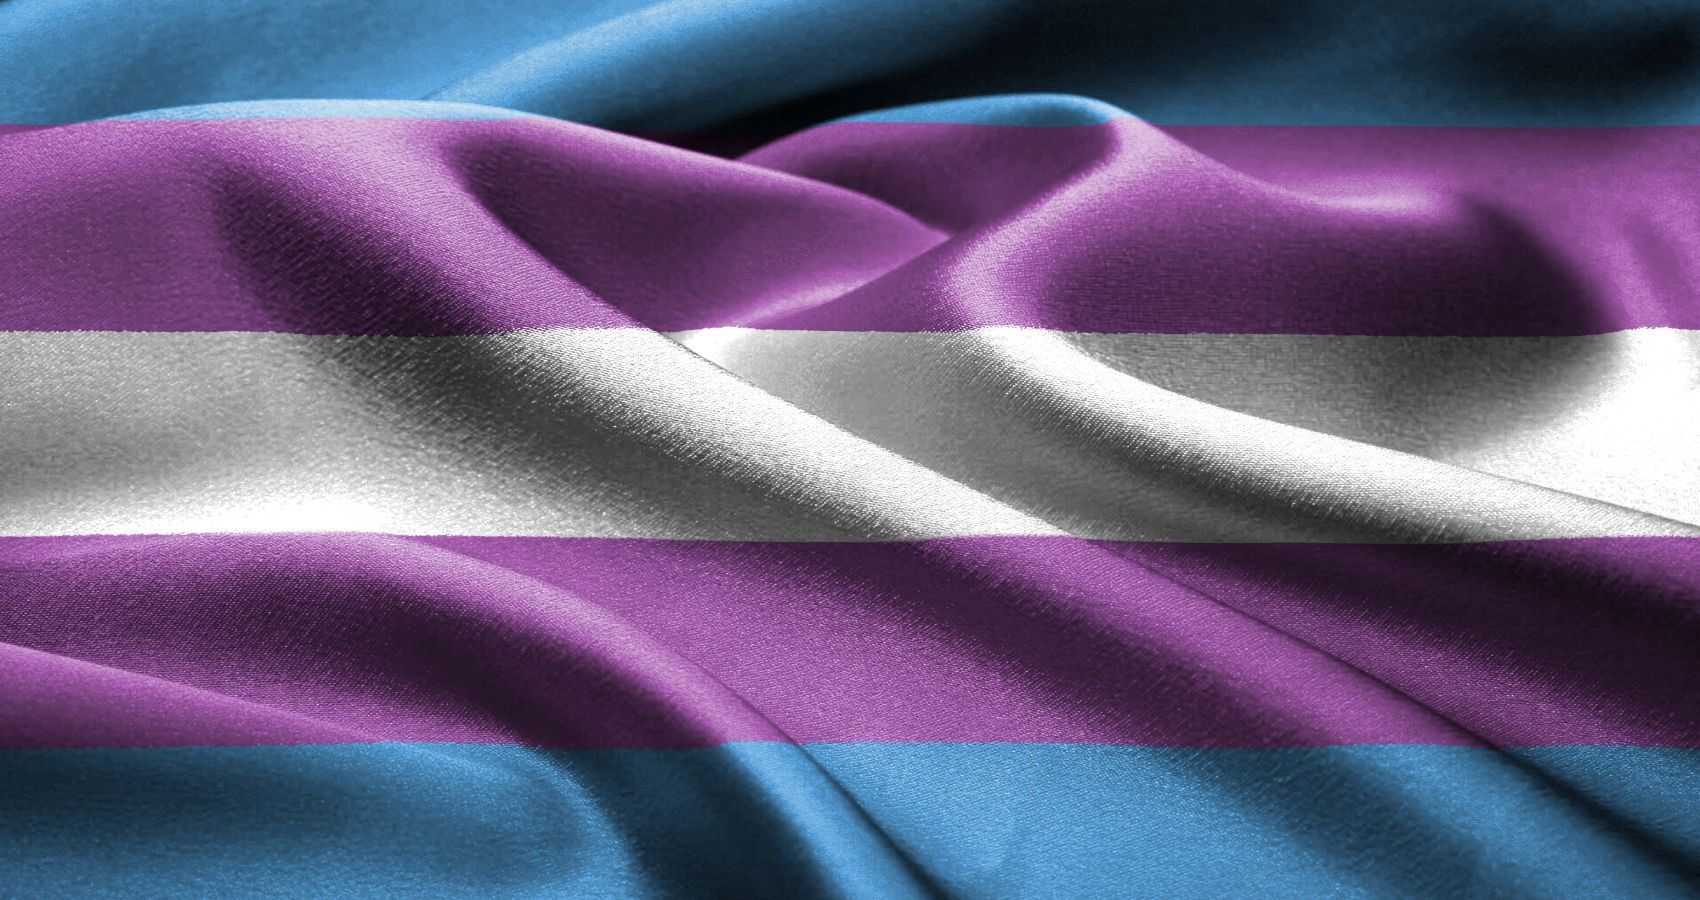 The flag for the Transgender community